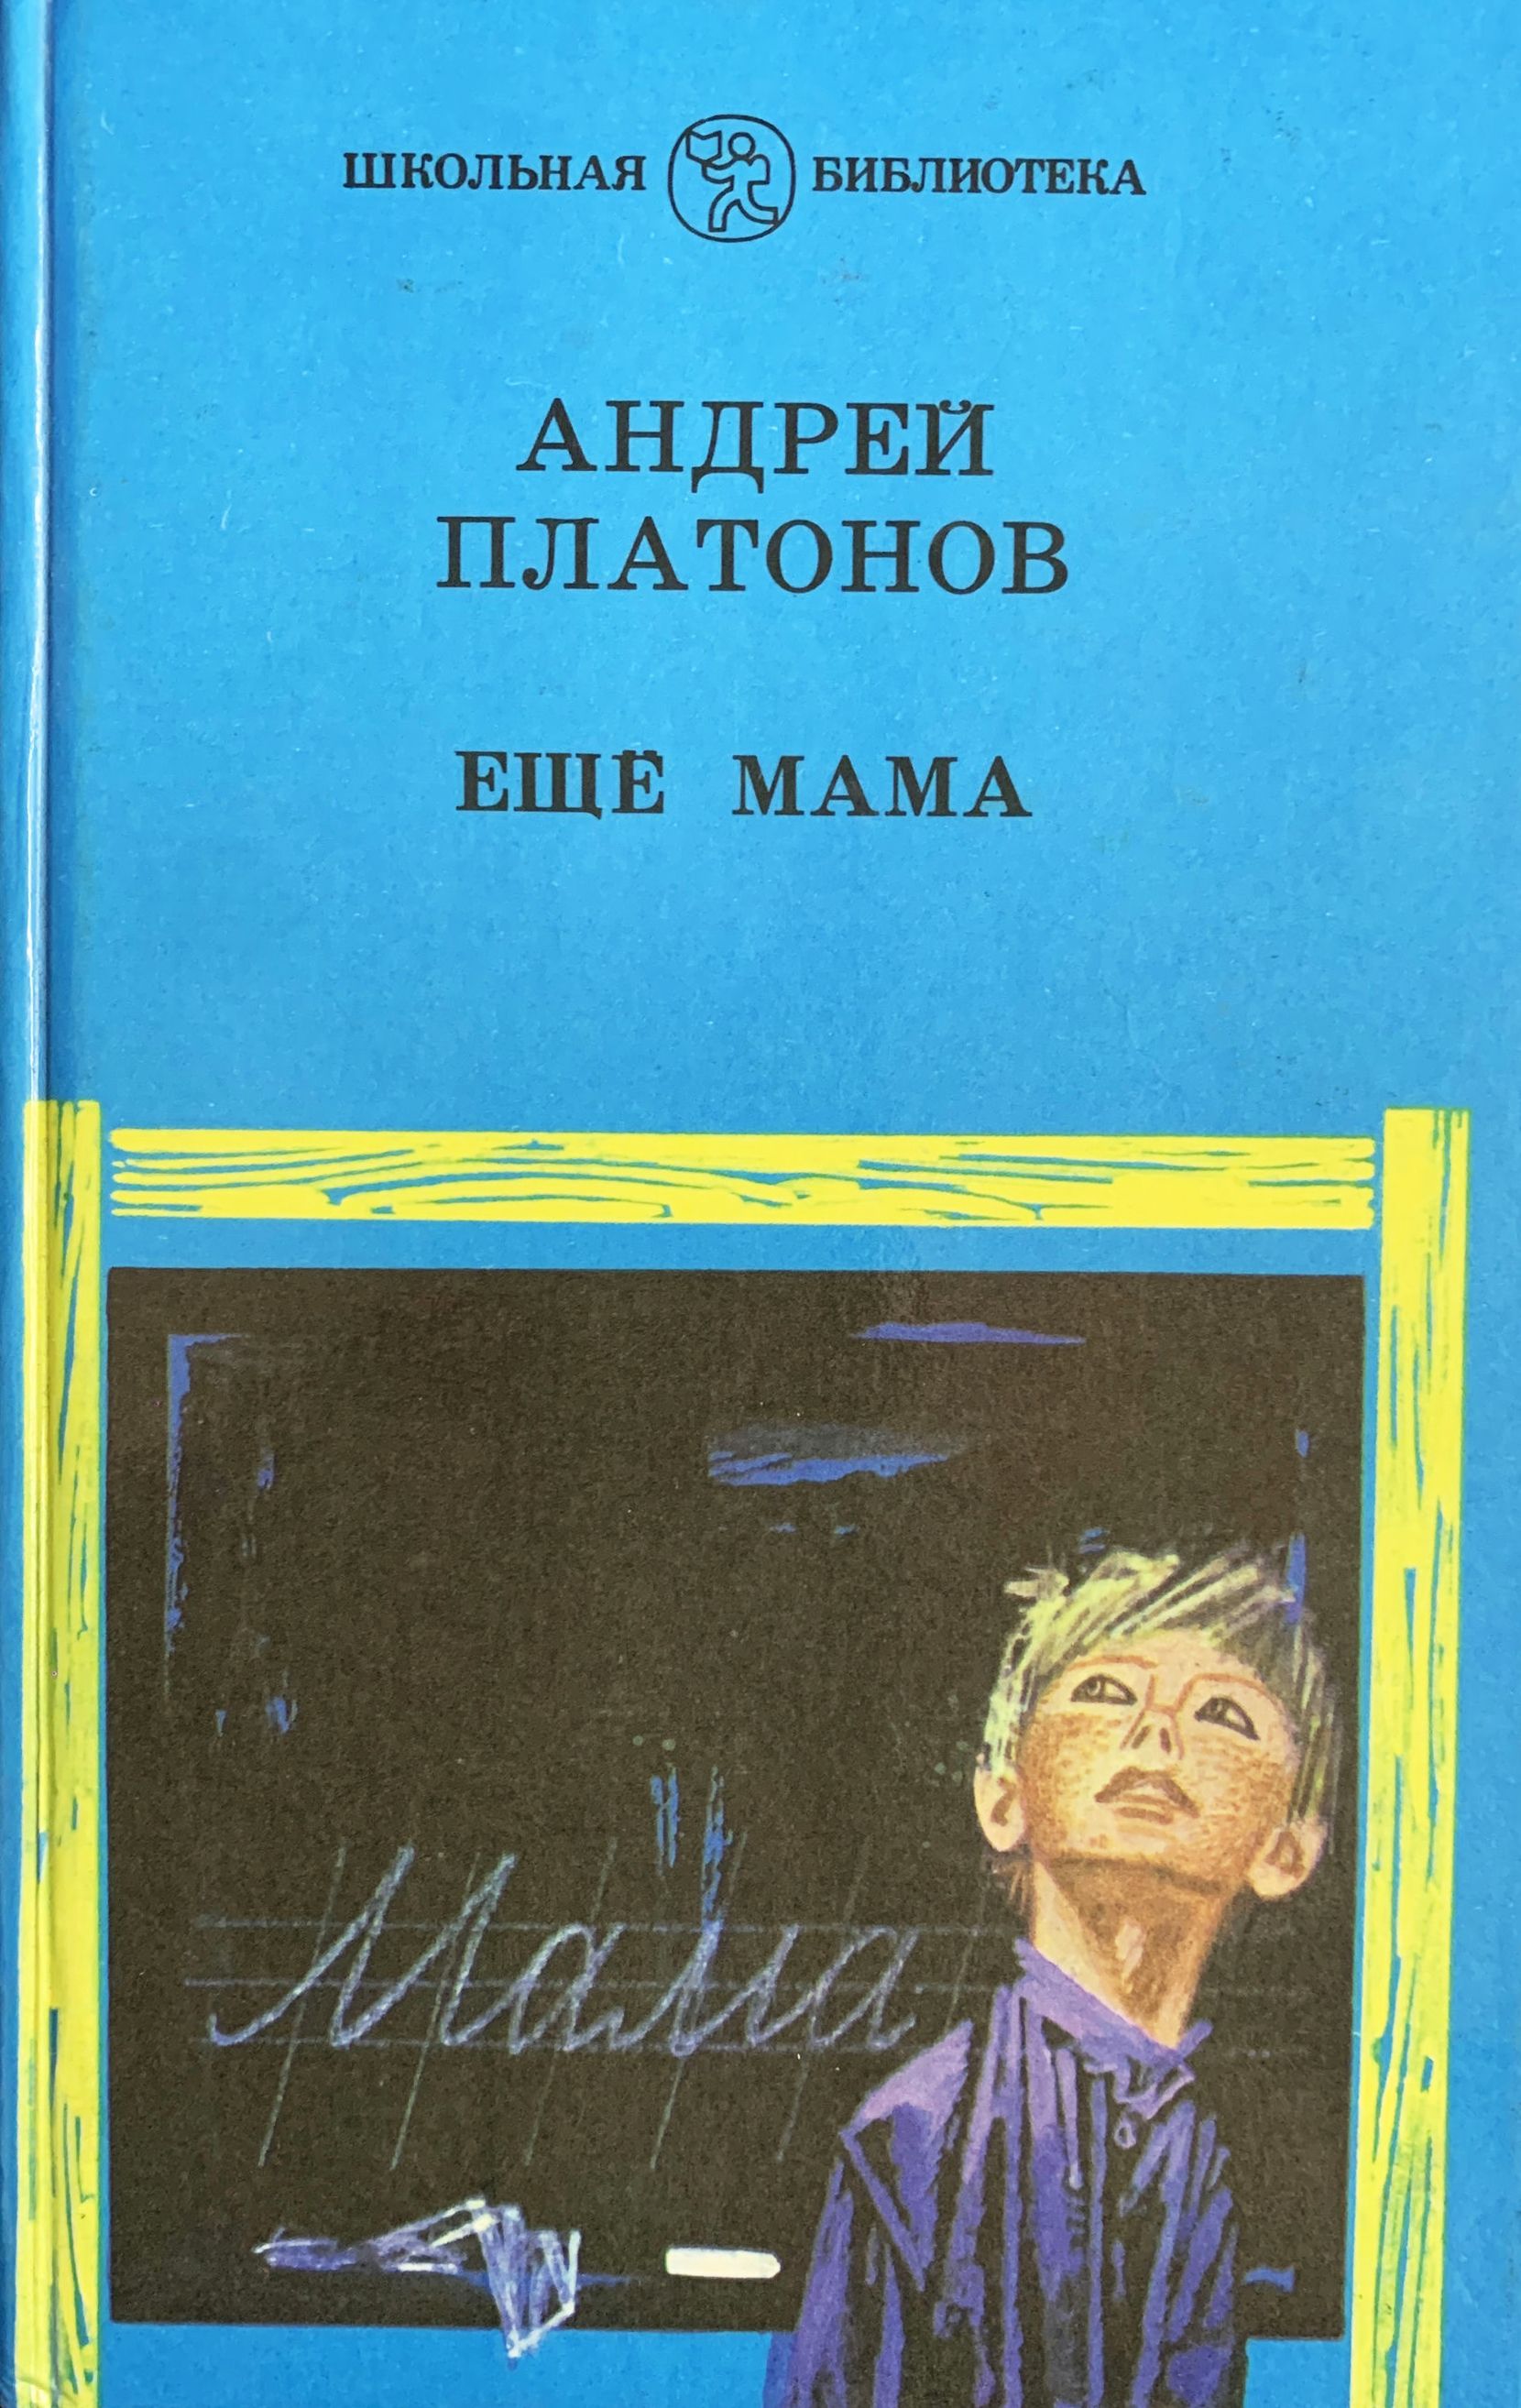 Читательский дневник еще мама. Ещё мама Платонов книга. Платонов еще мама обложка книги.